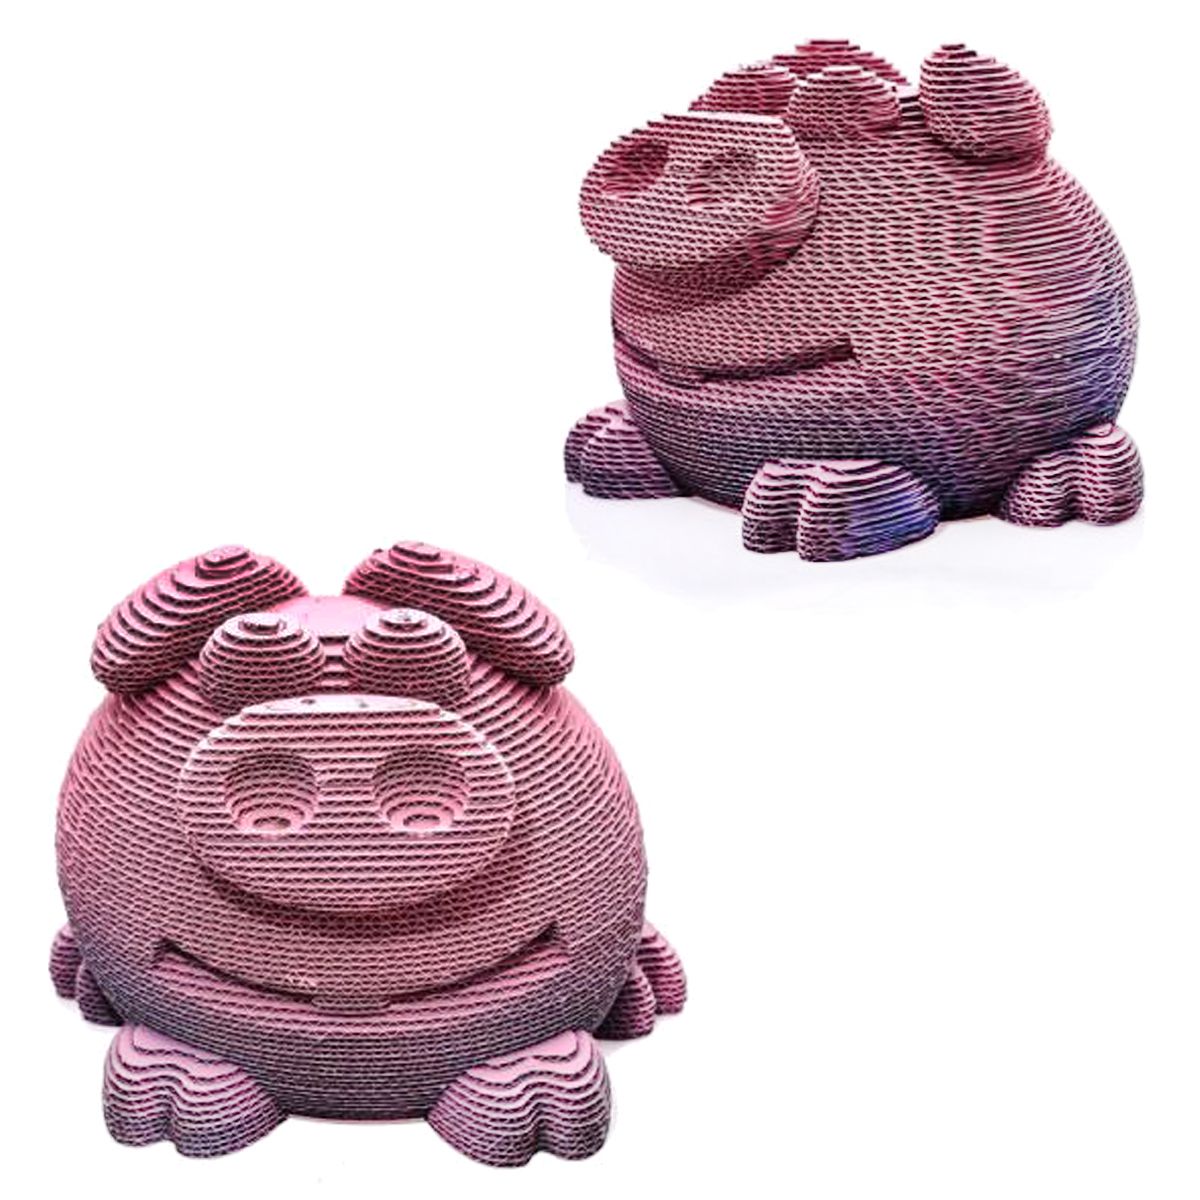 3D пазл "Свинка"